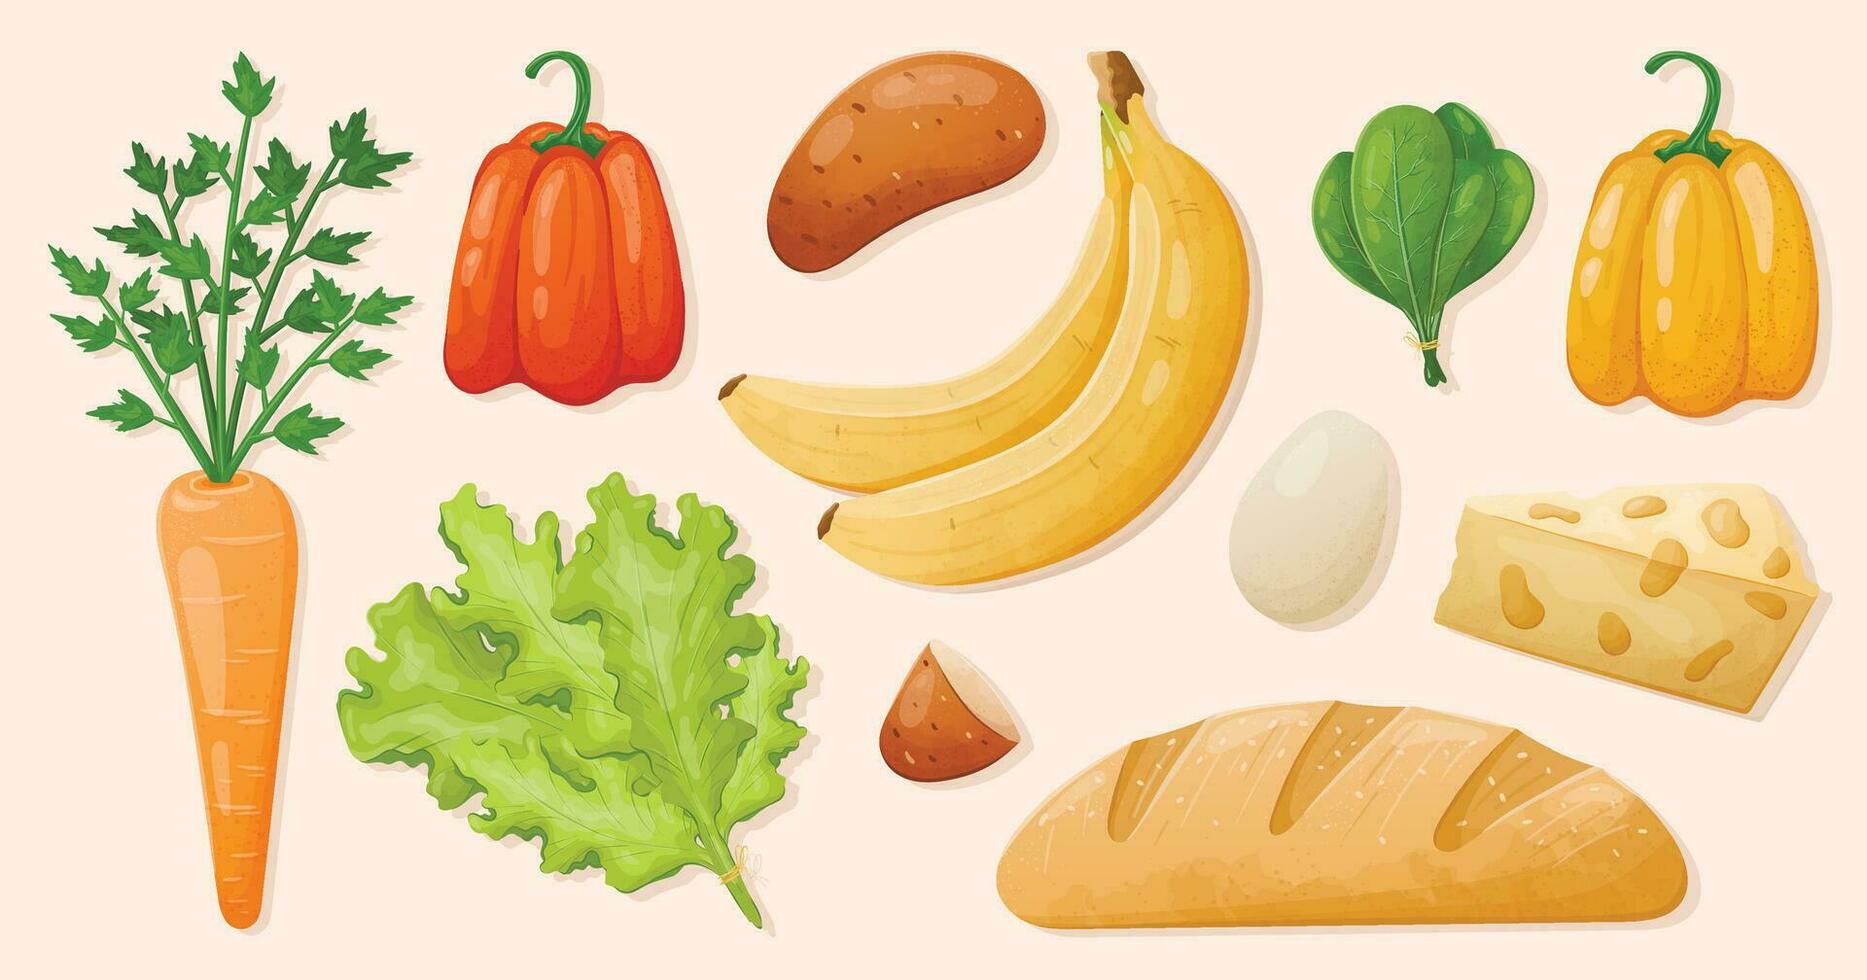 einstellen von Vektor isoliert realistisch Essen Illustrationen. frisch gesund Gemüse und Früchte, roh Kräuter, brot, Käse und Milch.